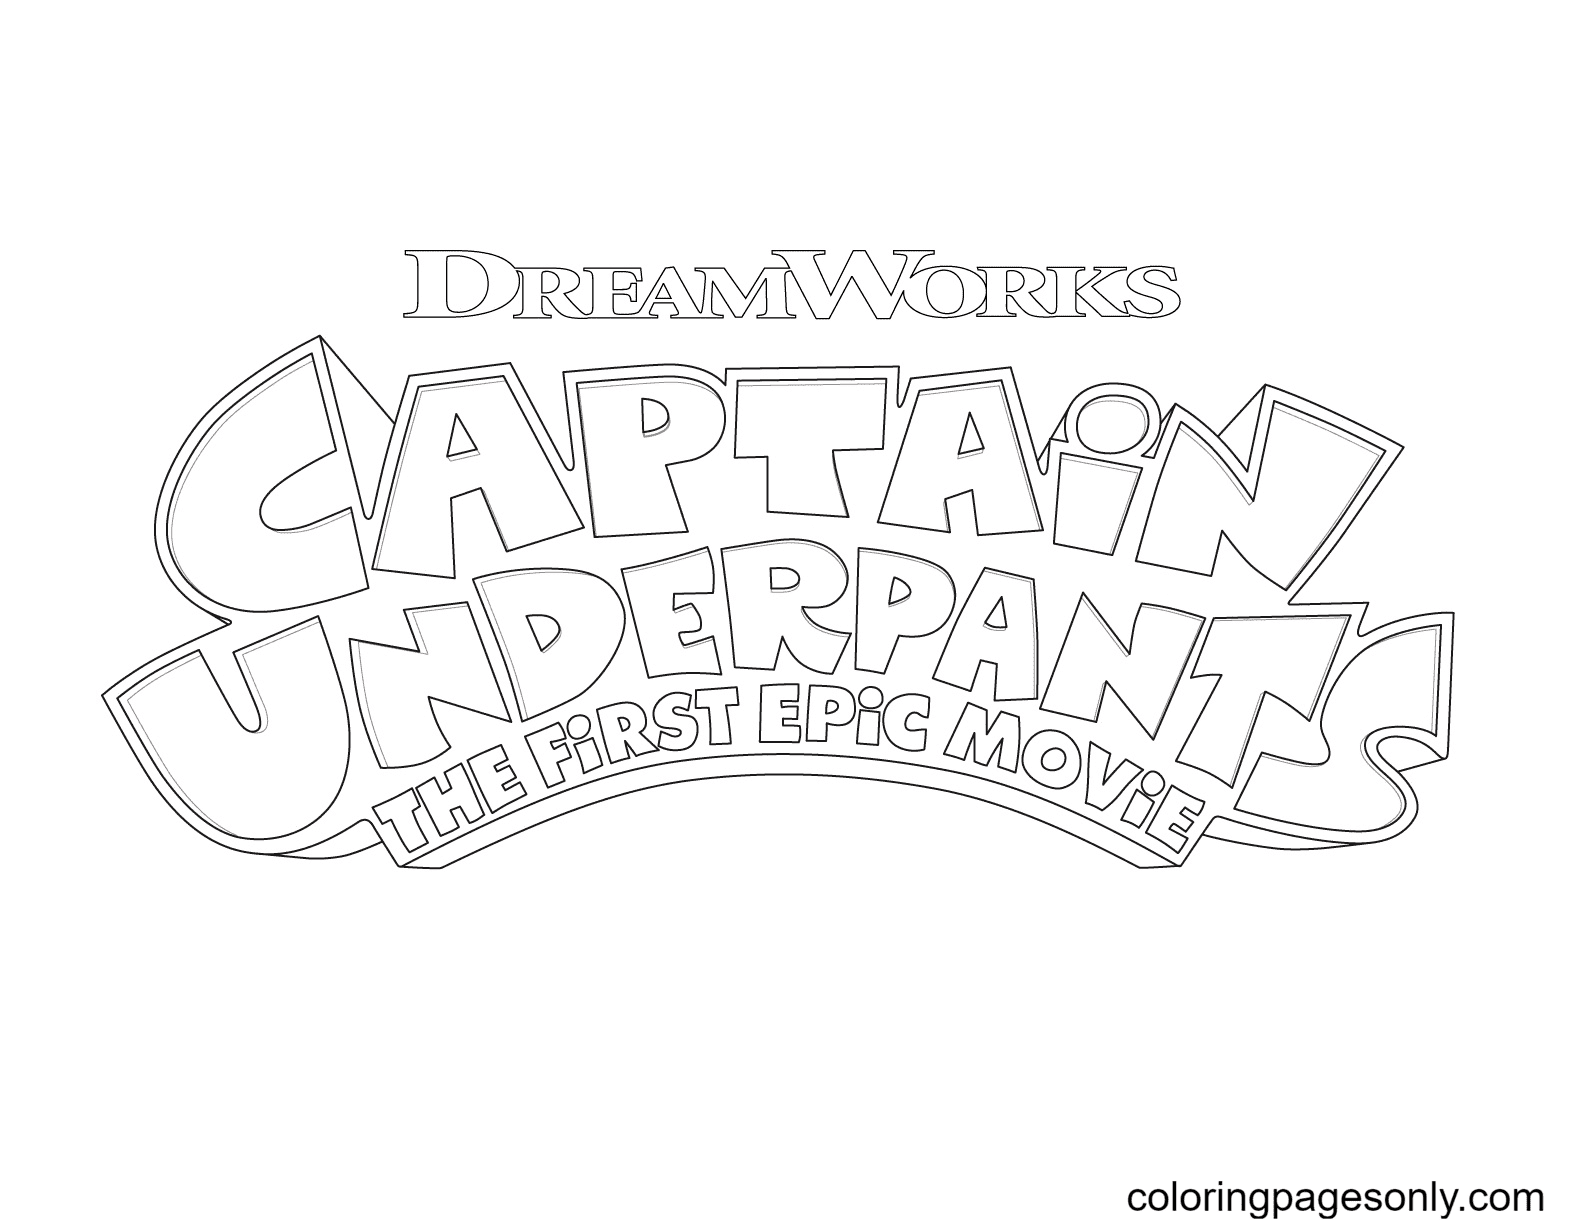 Captain Underpants-logo van Captain Underpants